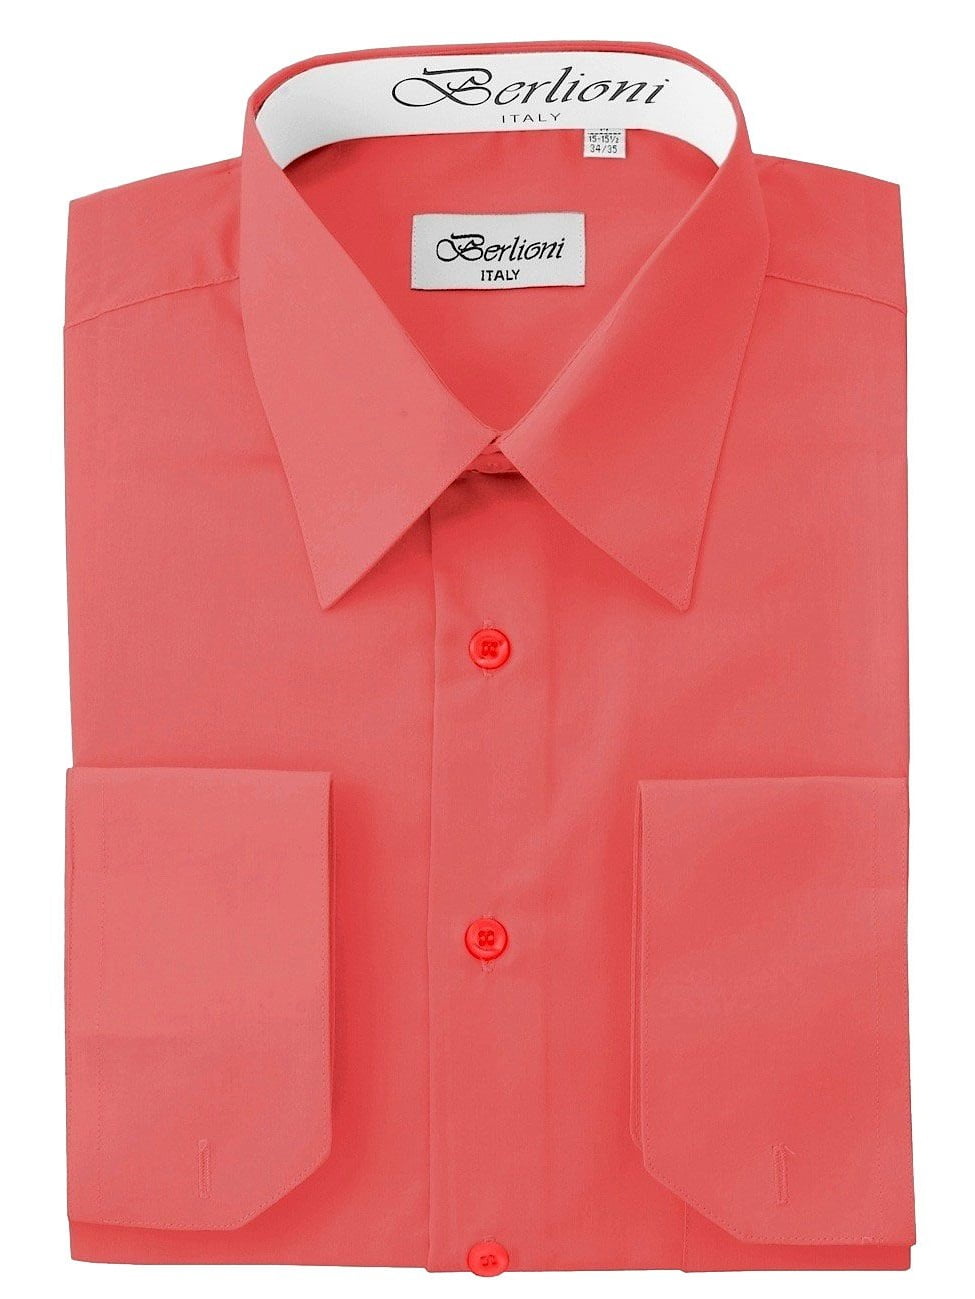 Berlioni - Men's Solid Color Dress Shirt - Walmart.com - Walmart.com